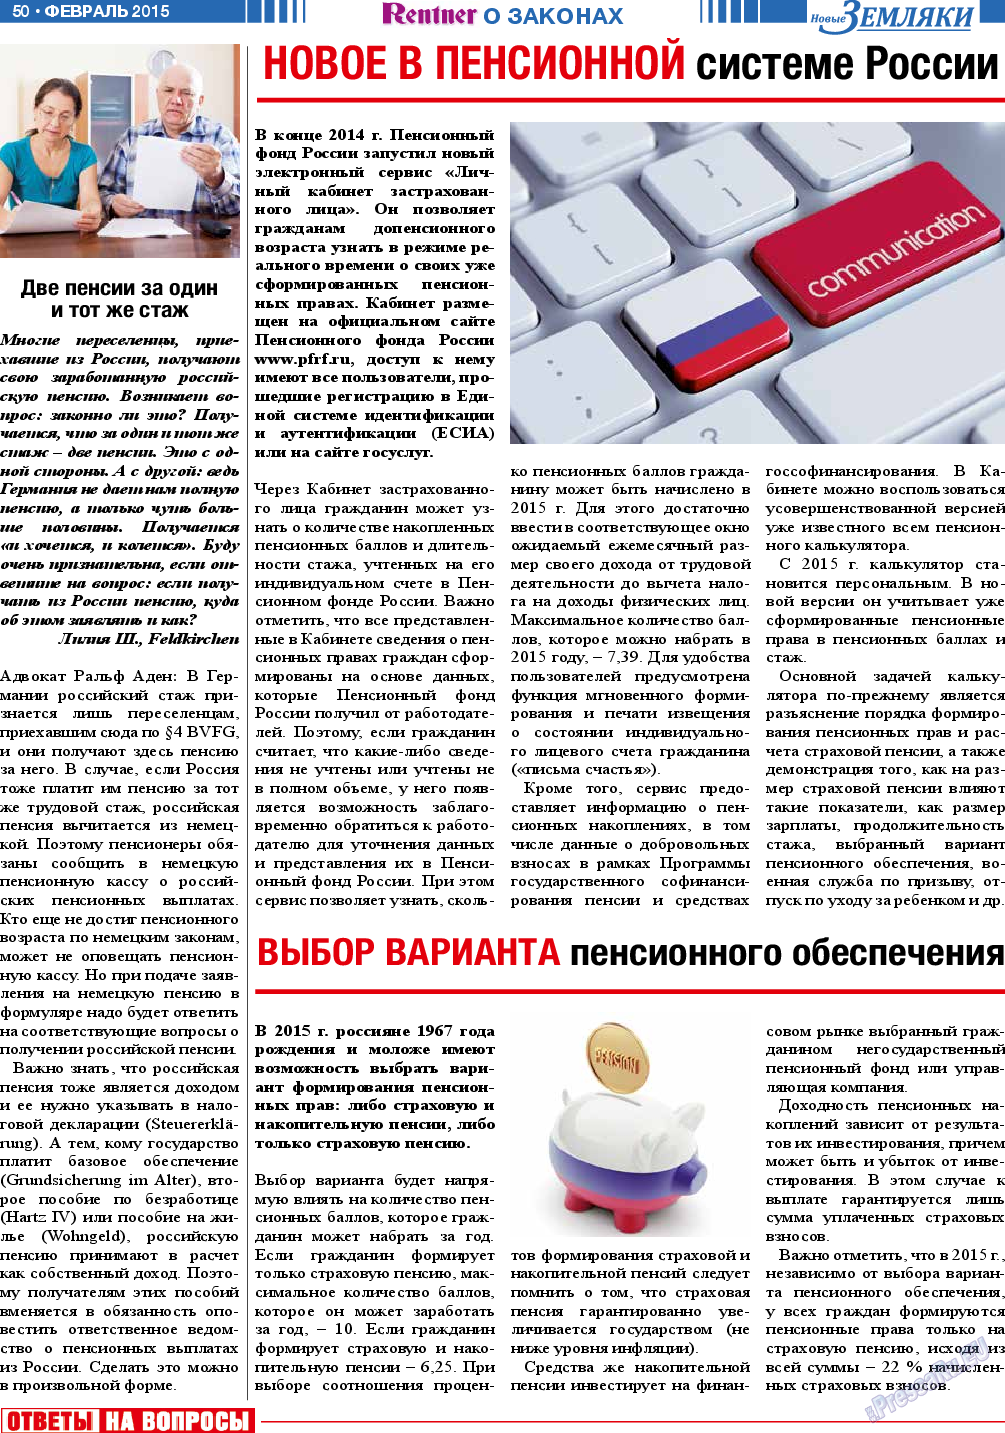 Новые Земляки, газета. 2015 №2 стр.50